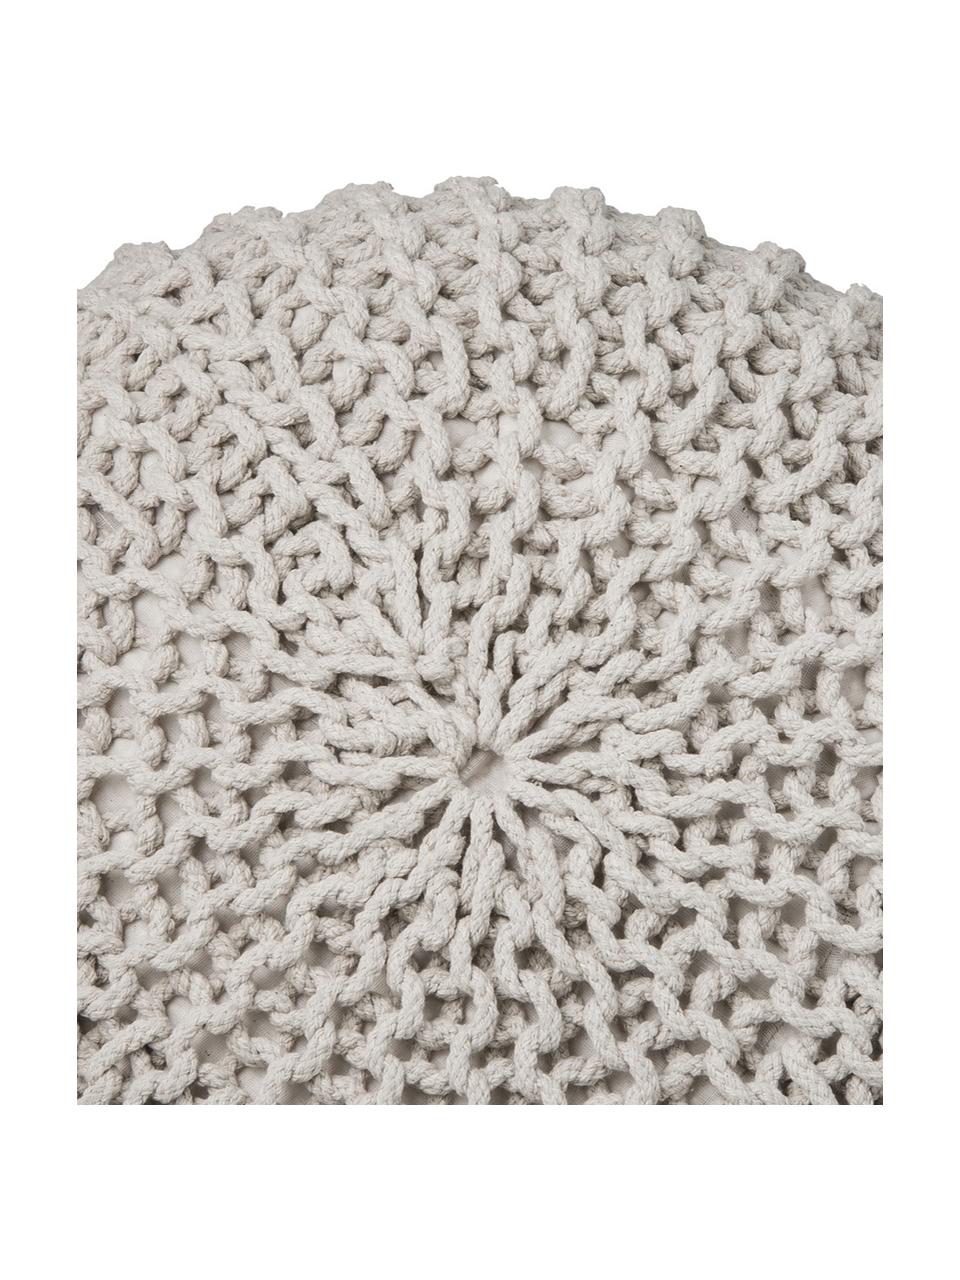 Ručně vyrobený pletený puf Dori, Greige, Ø 55 cm, V 35 cm